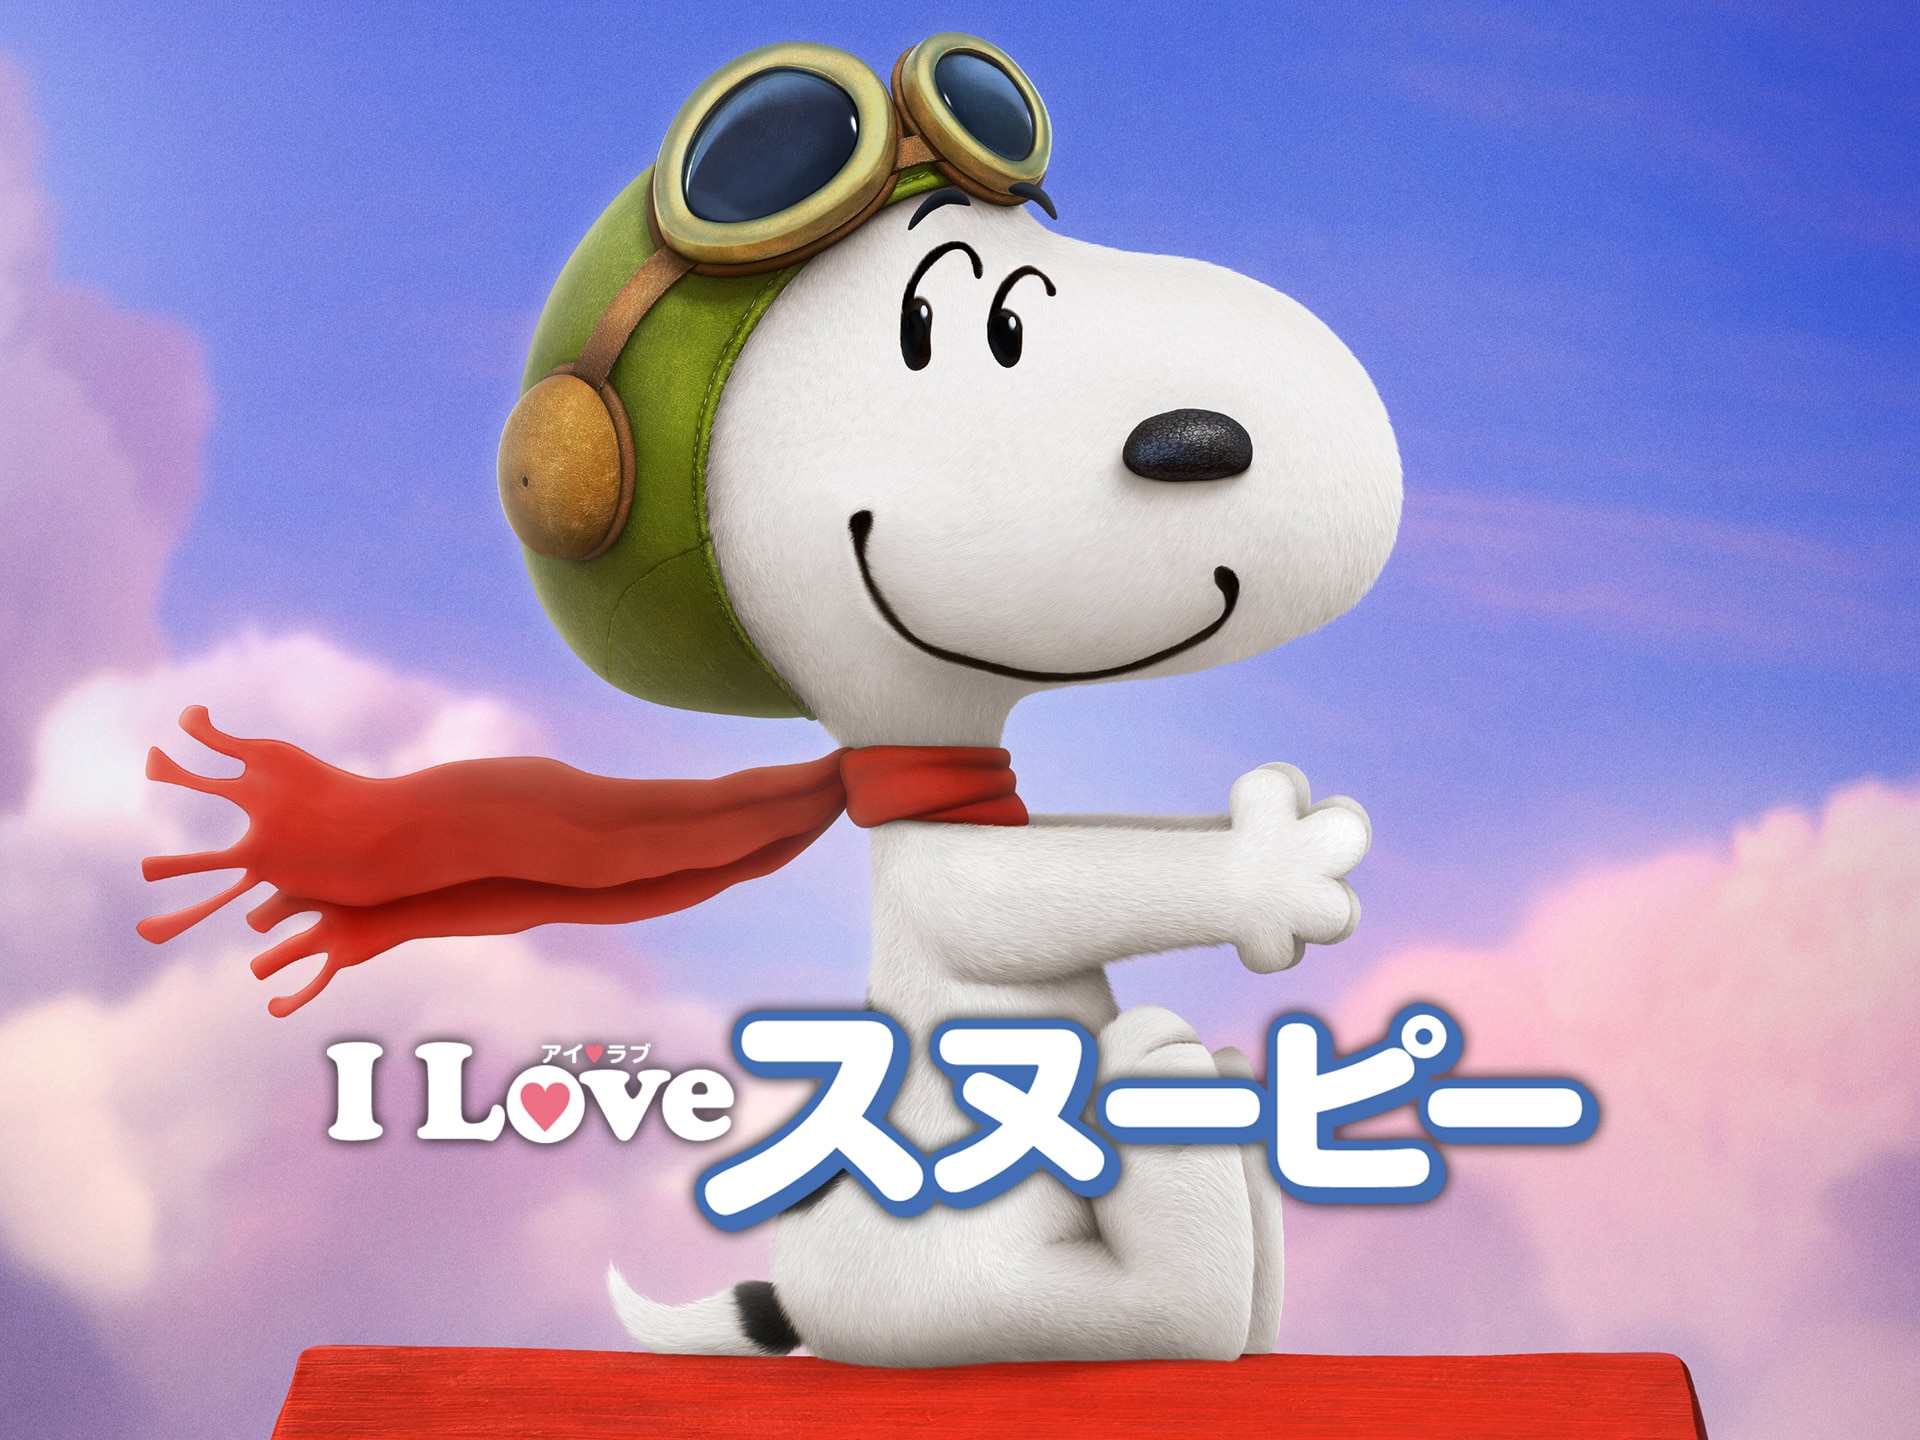 アニメ I Love スヌーピー The Peanuts Movie フル動画 初月無料 動画配信サービスのビデオマーケット